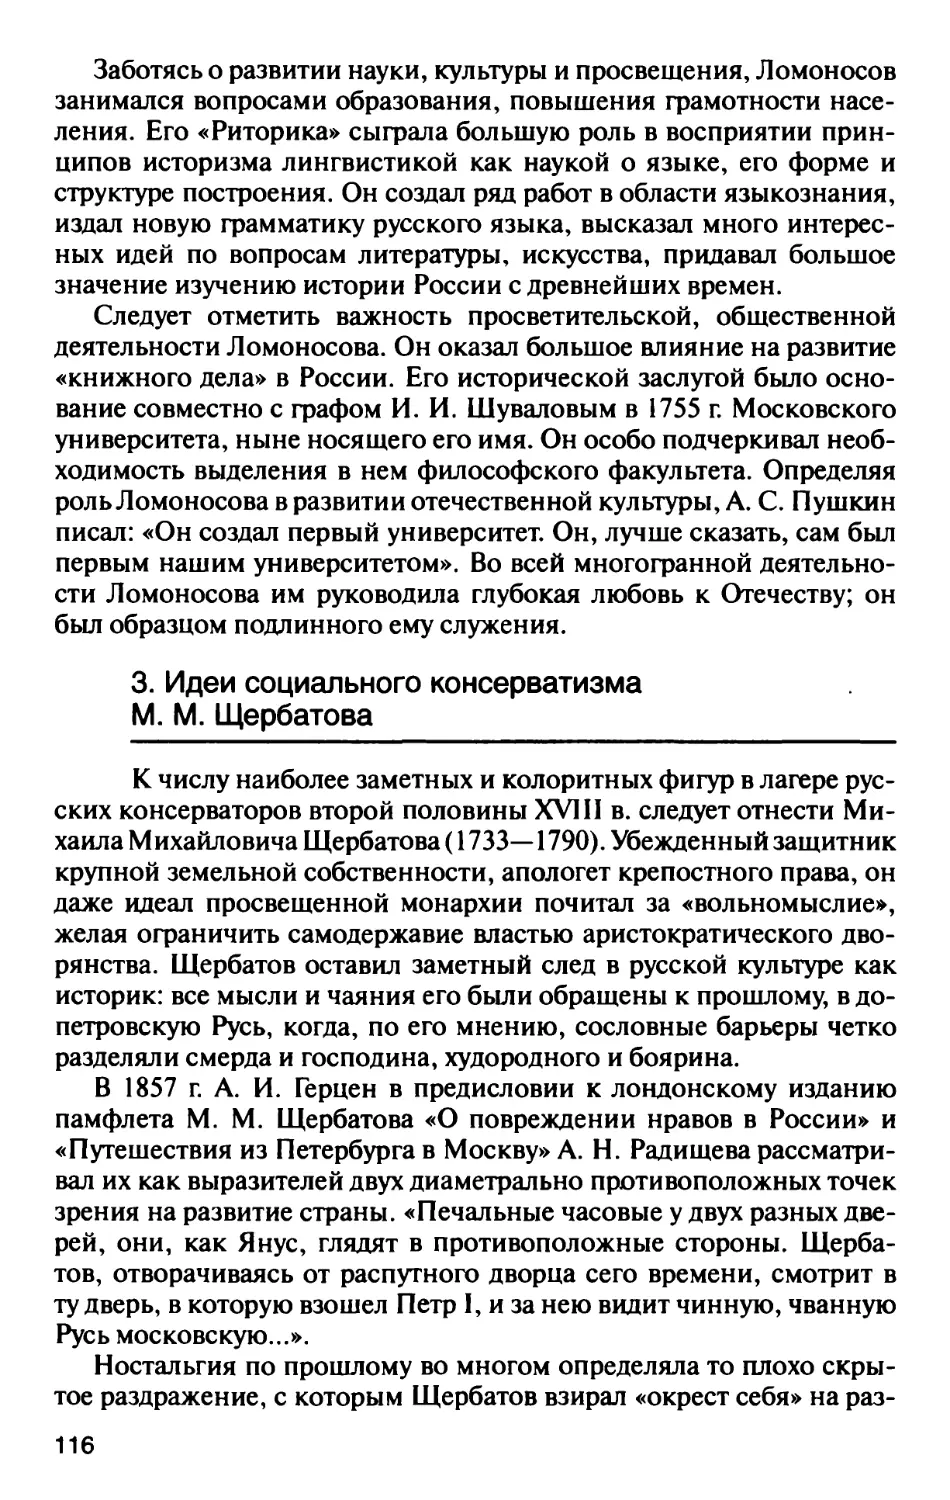 3. Идеи социального консерватизма M.M. Щербатова